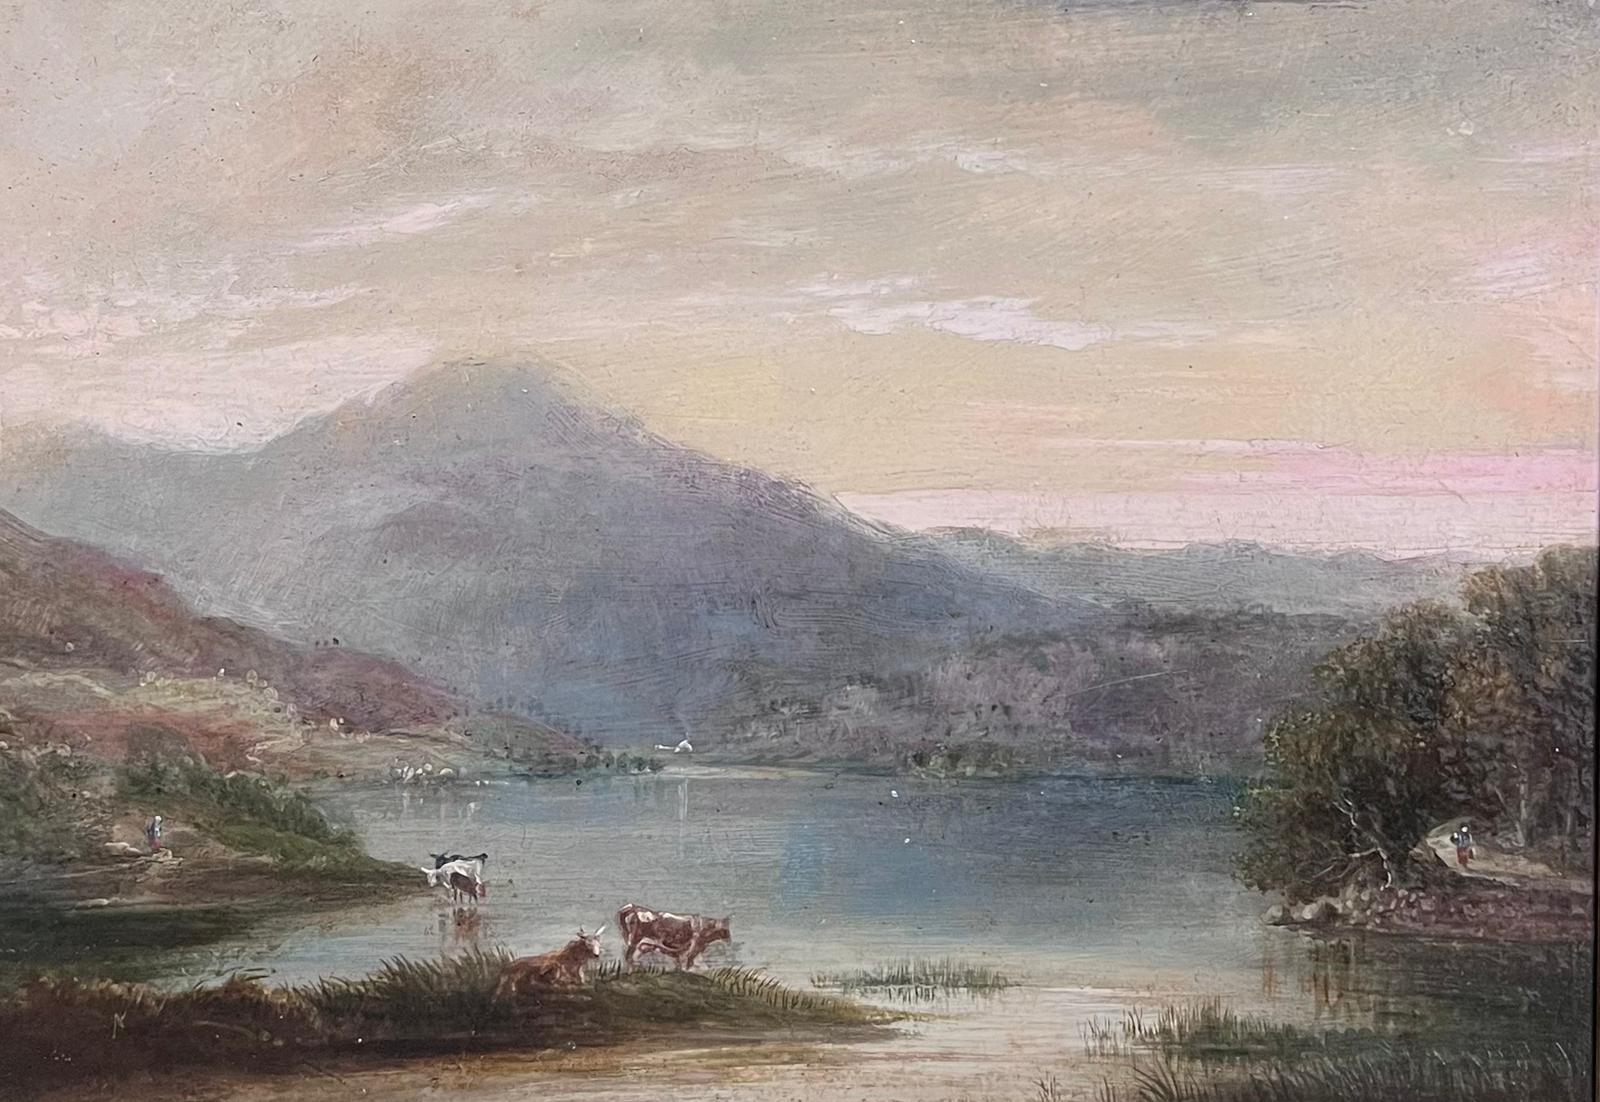 Schottische Highlands Loch-Szene, Rinder, Weinreben, Dämmerung, atmosphärisches Licht, 19. Jahrhundert, Öl – Painting von British 1860's